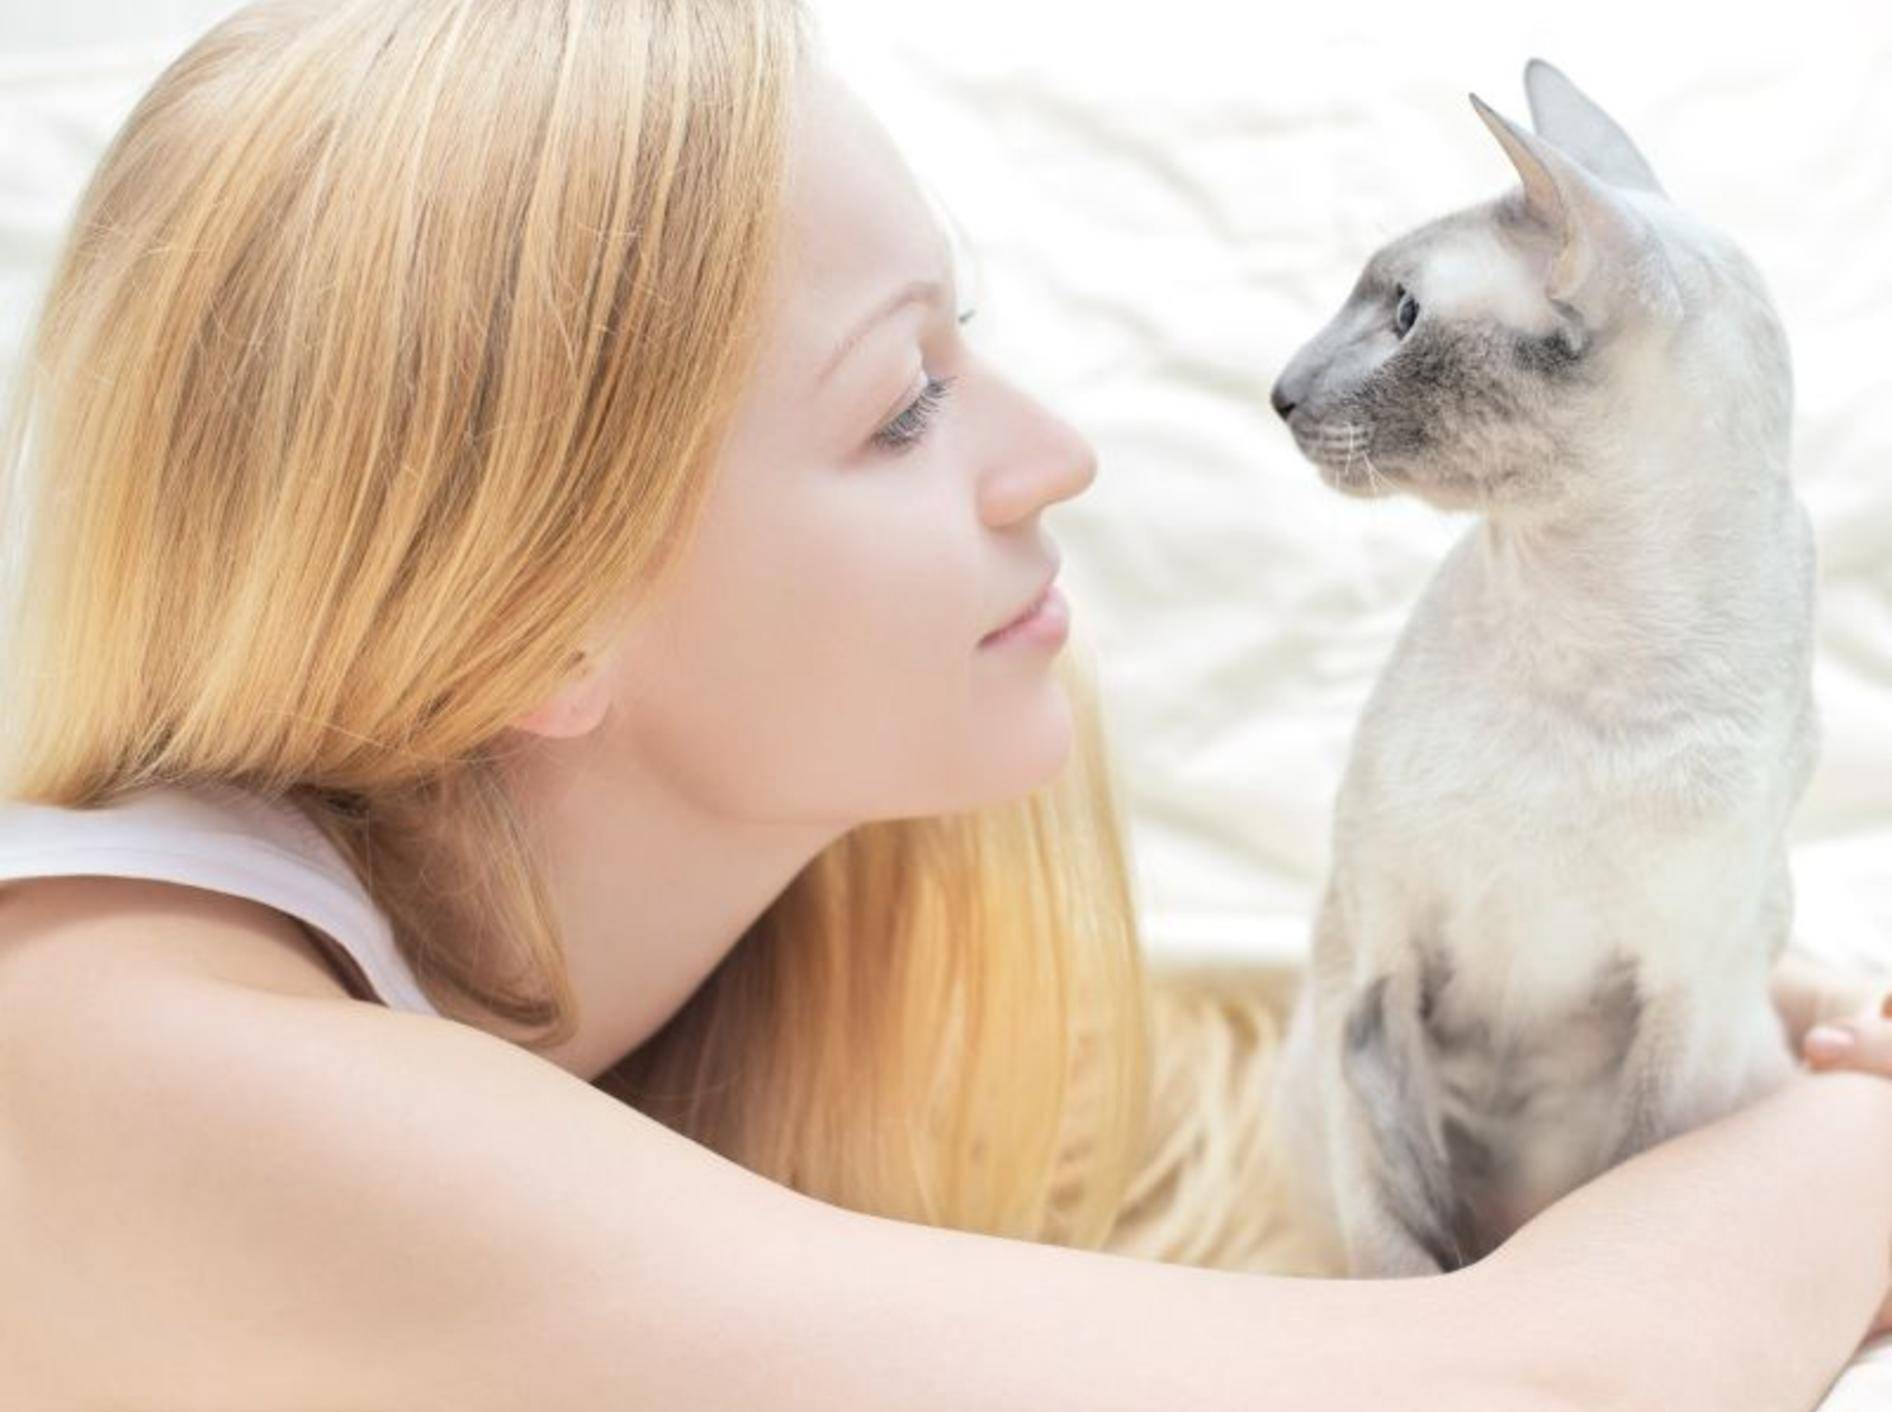 Clickertraining mit Katzen macht Spaß und sorgt für Abwechslung – Bild: Shutterstock / Petr Malyshev